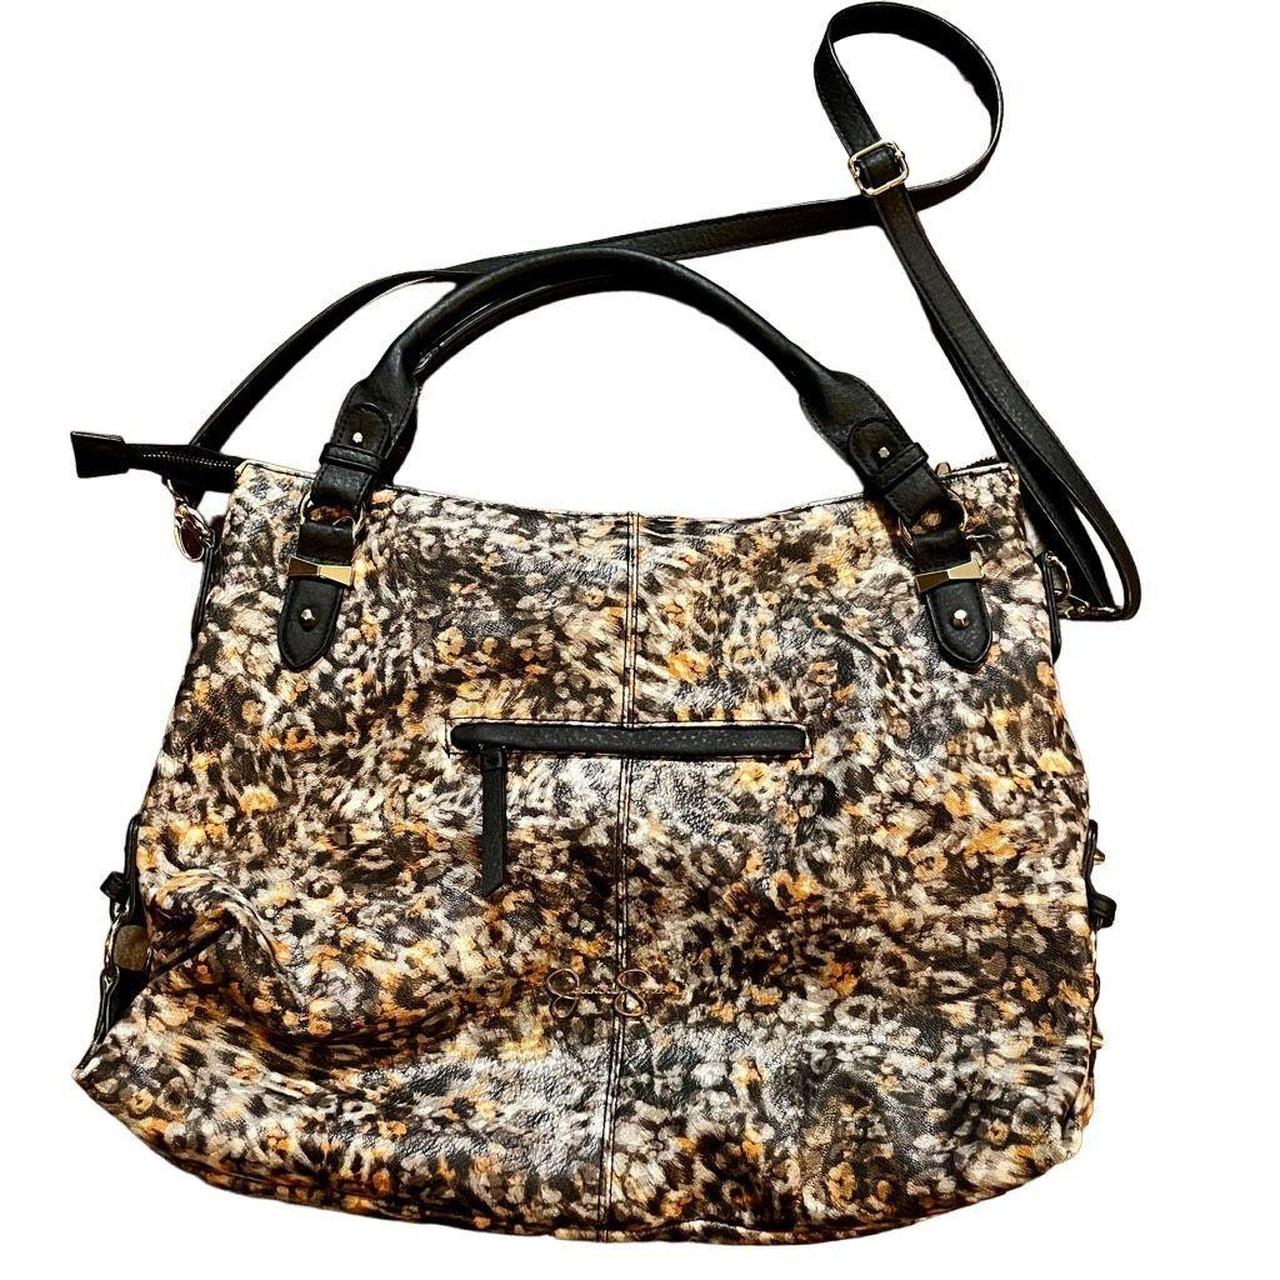 Jessica Simpson Black Fur/Faux Leather Satchel Women's Large Purse Bag |  eBay